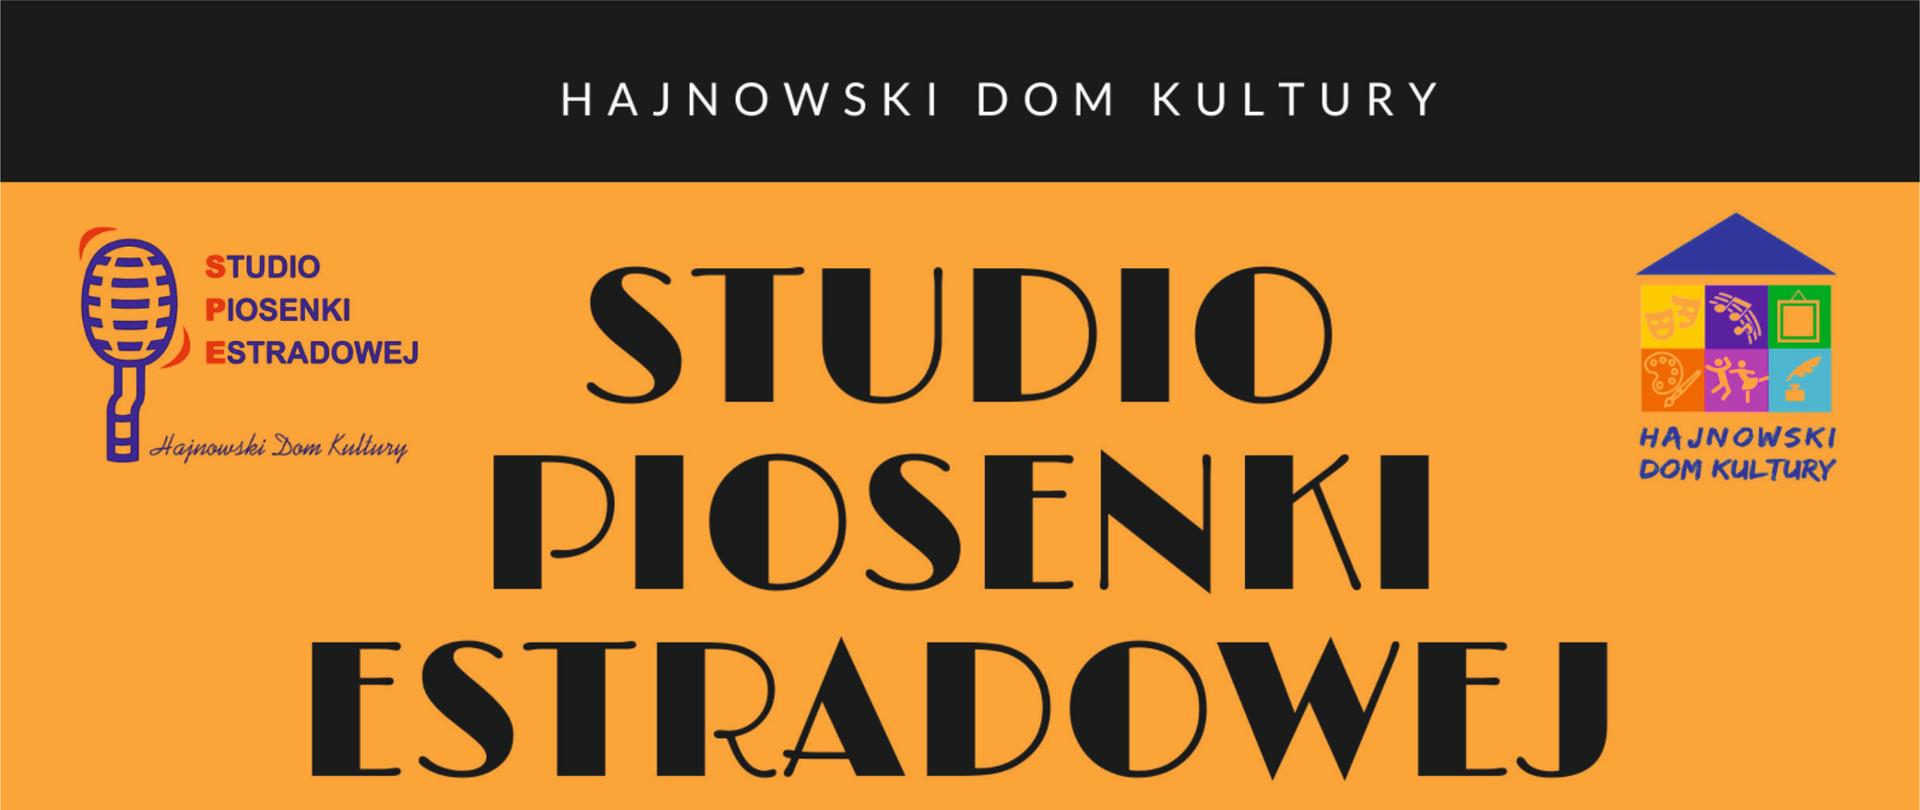 Studio Piosenki Estradowej ogłasza nabór - na żółtym tle dwa zdjęcia solistek oraz informacje organizacyjne, zawarte w artykule